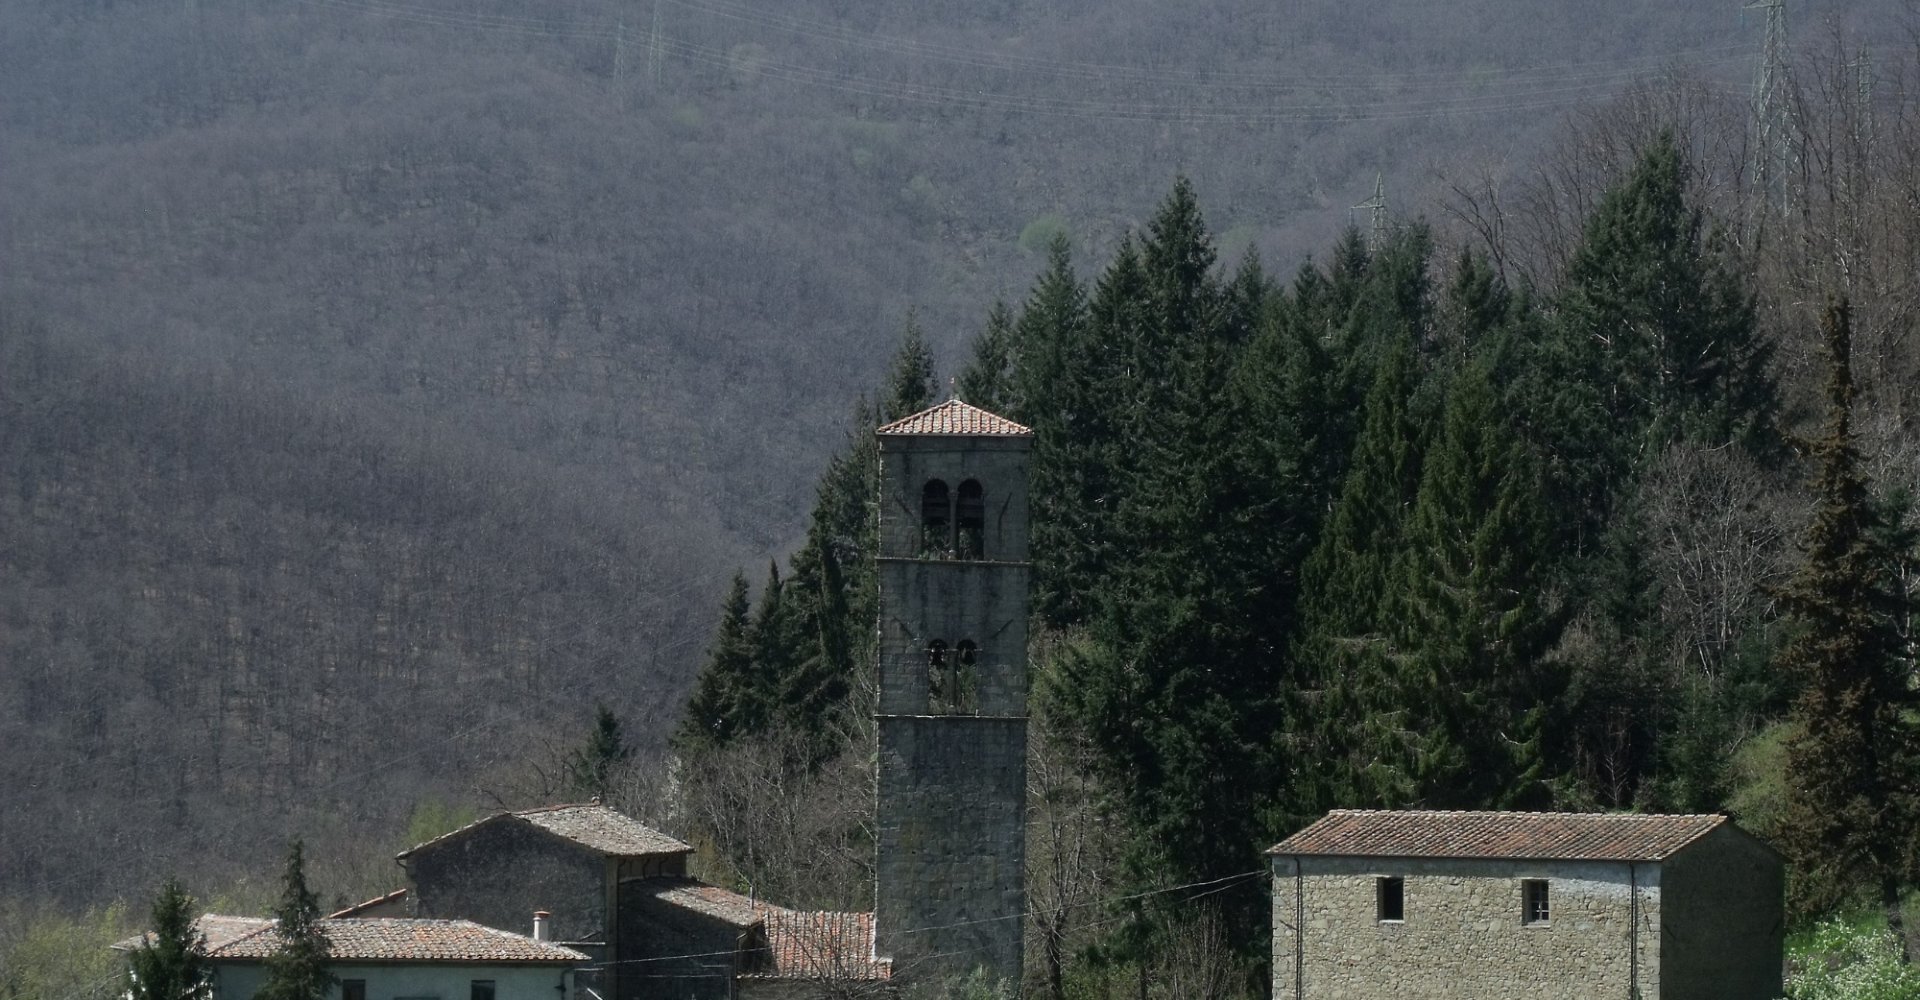 Chiesa dei santi Jacopo e Ginese